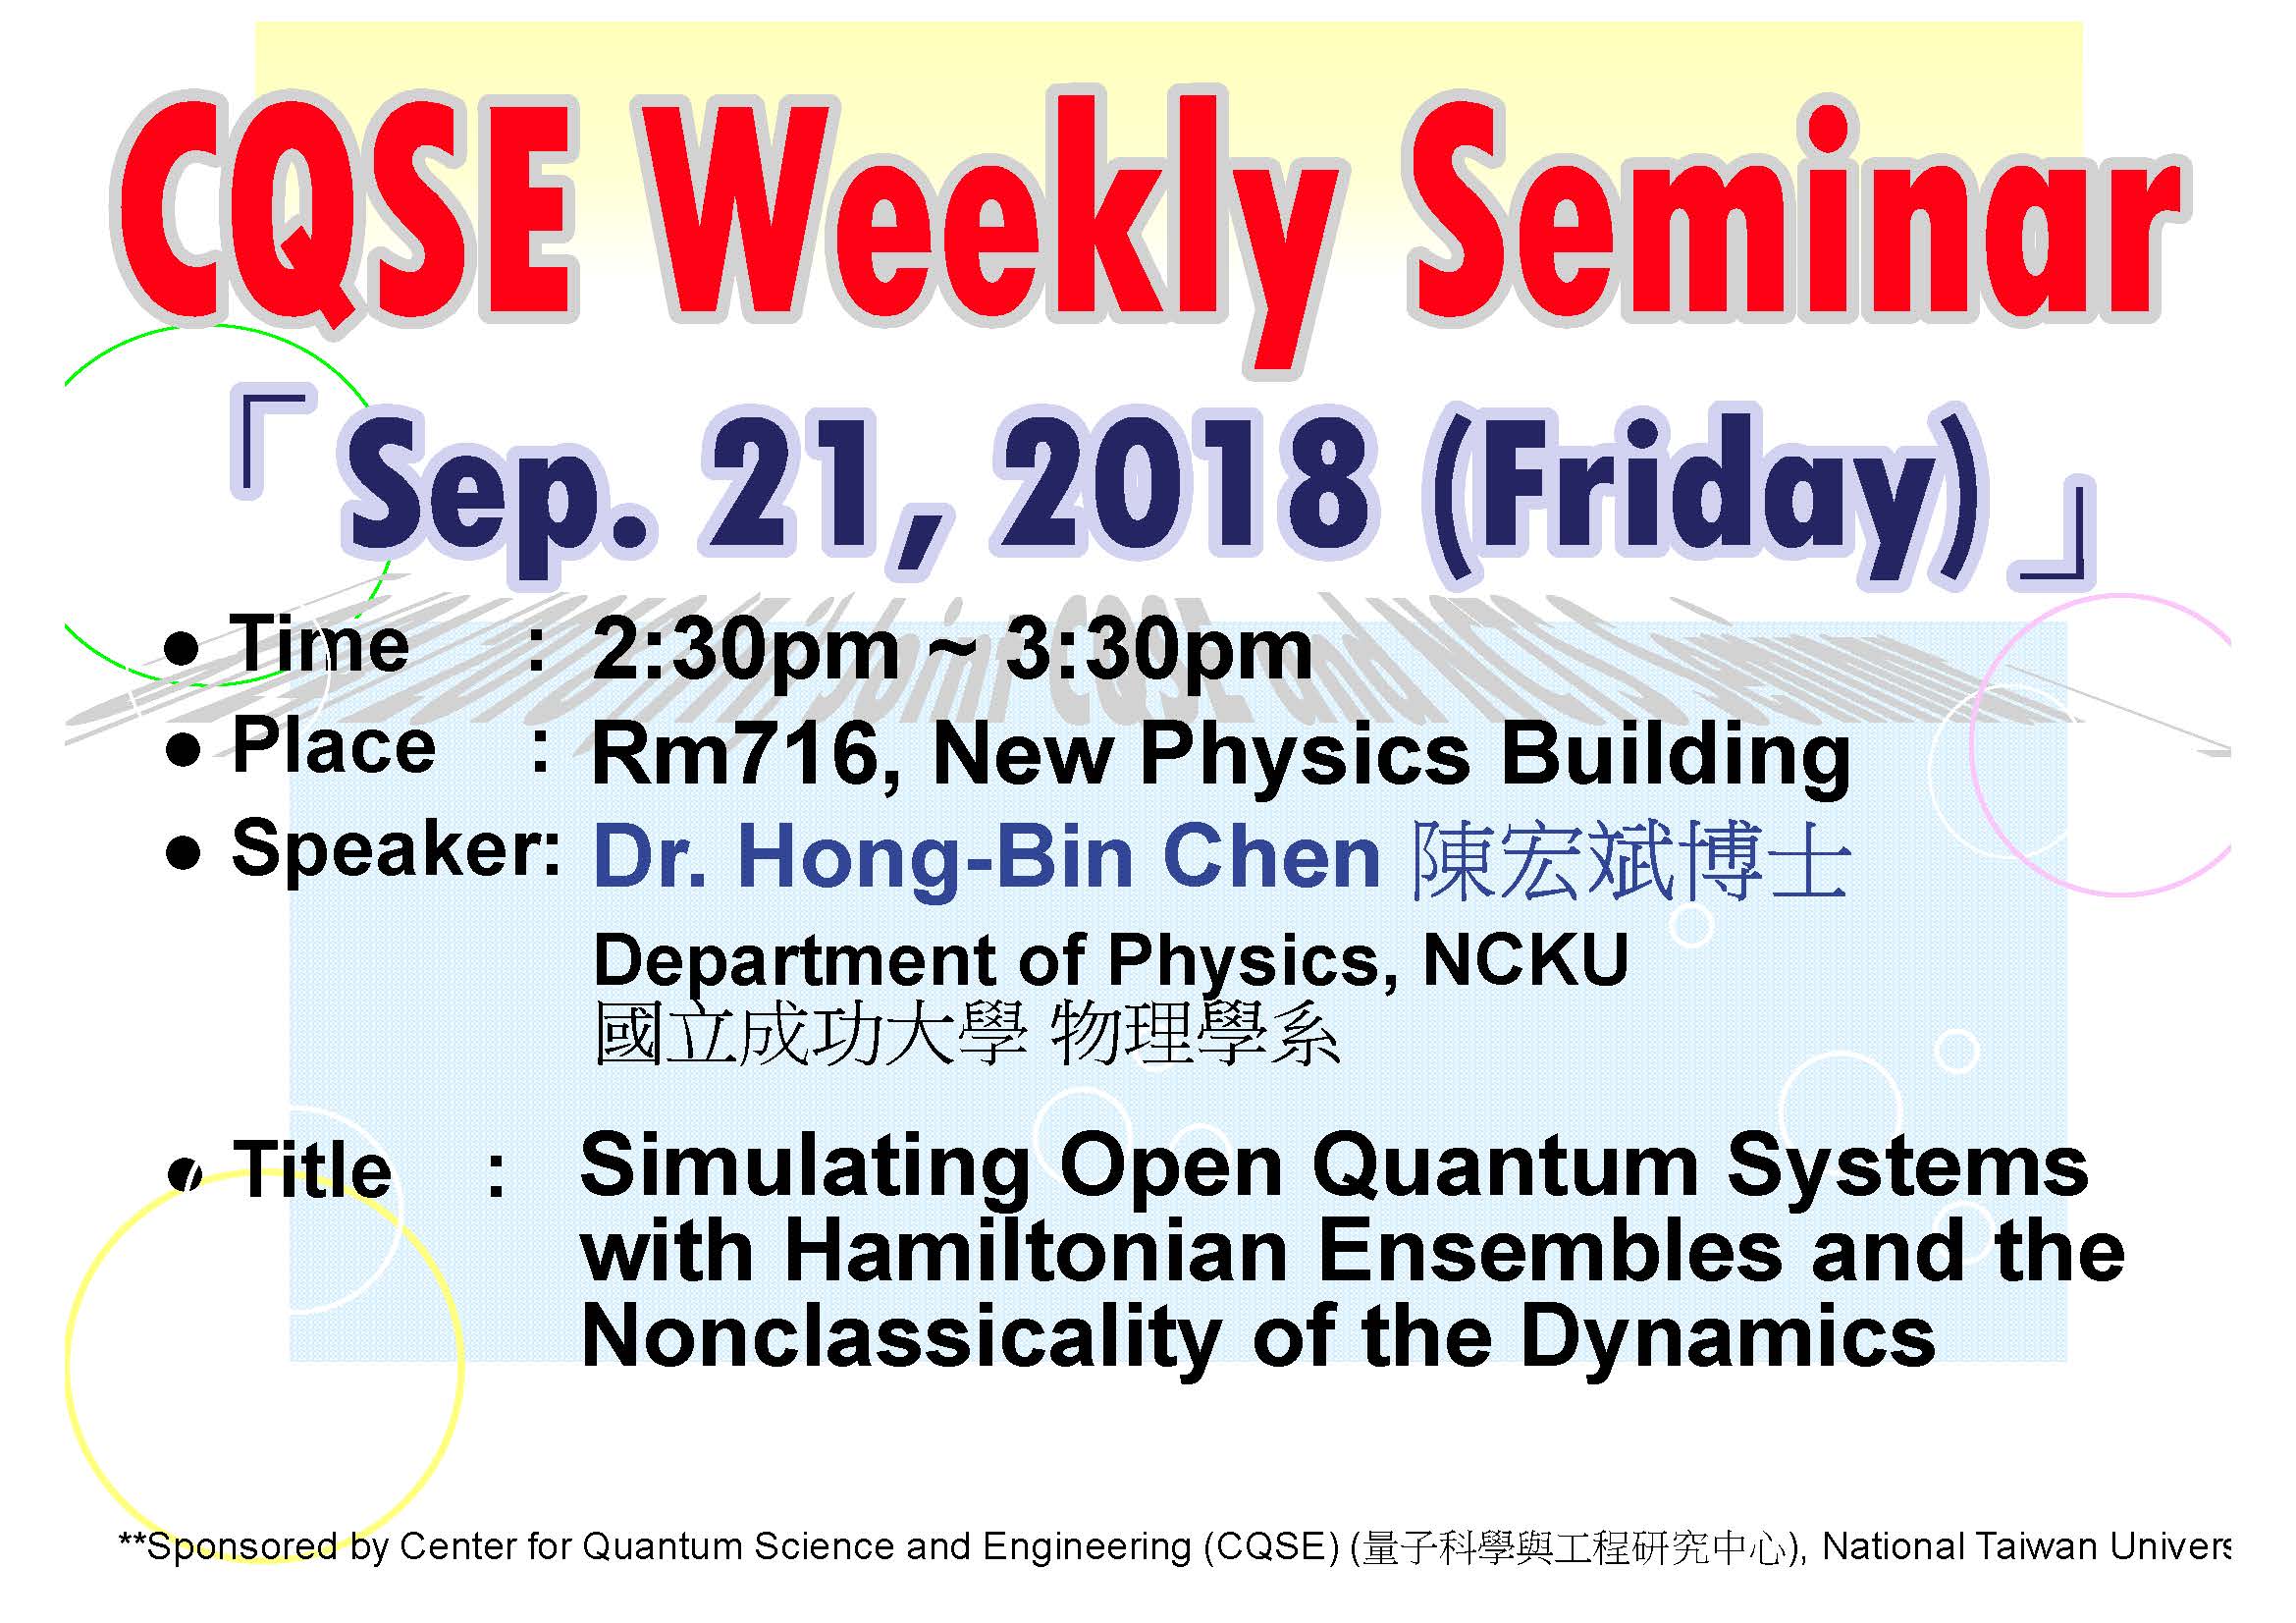 CQSE Weekly Seminar